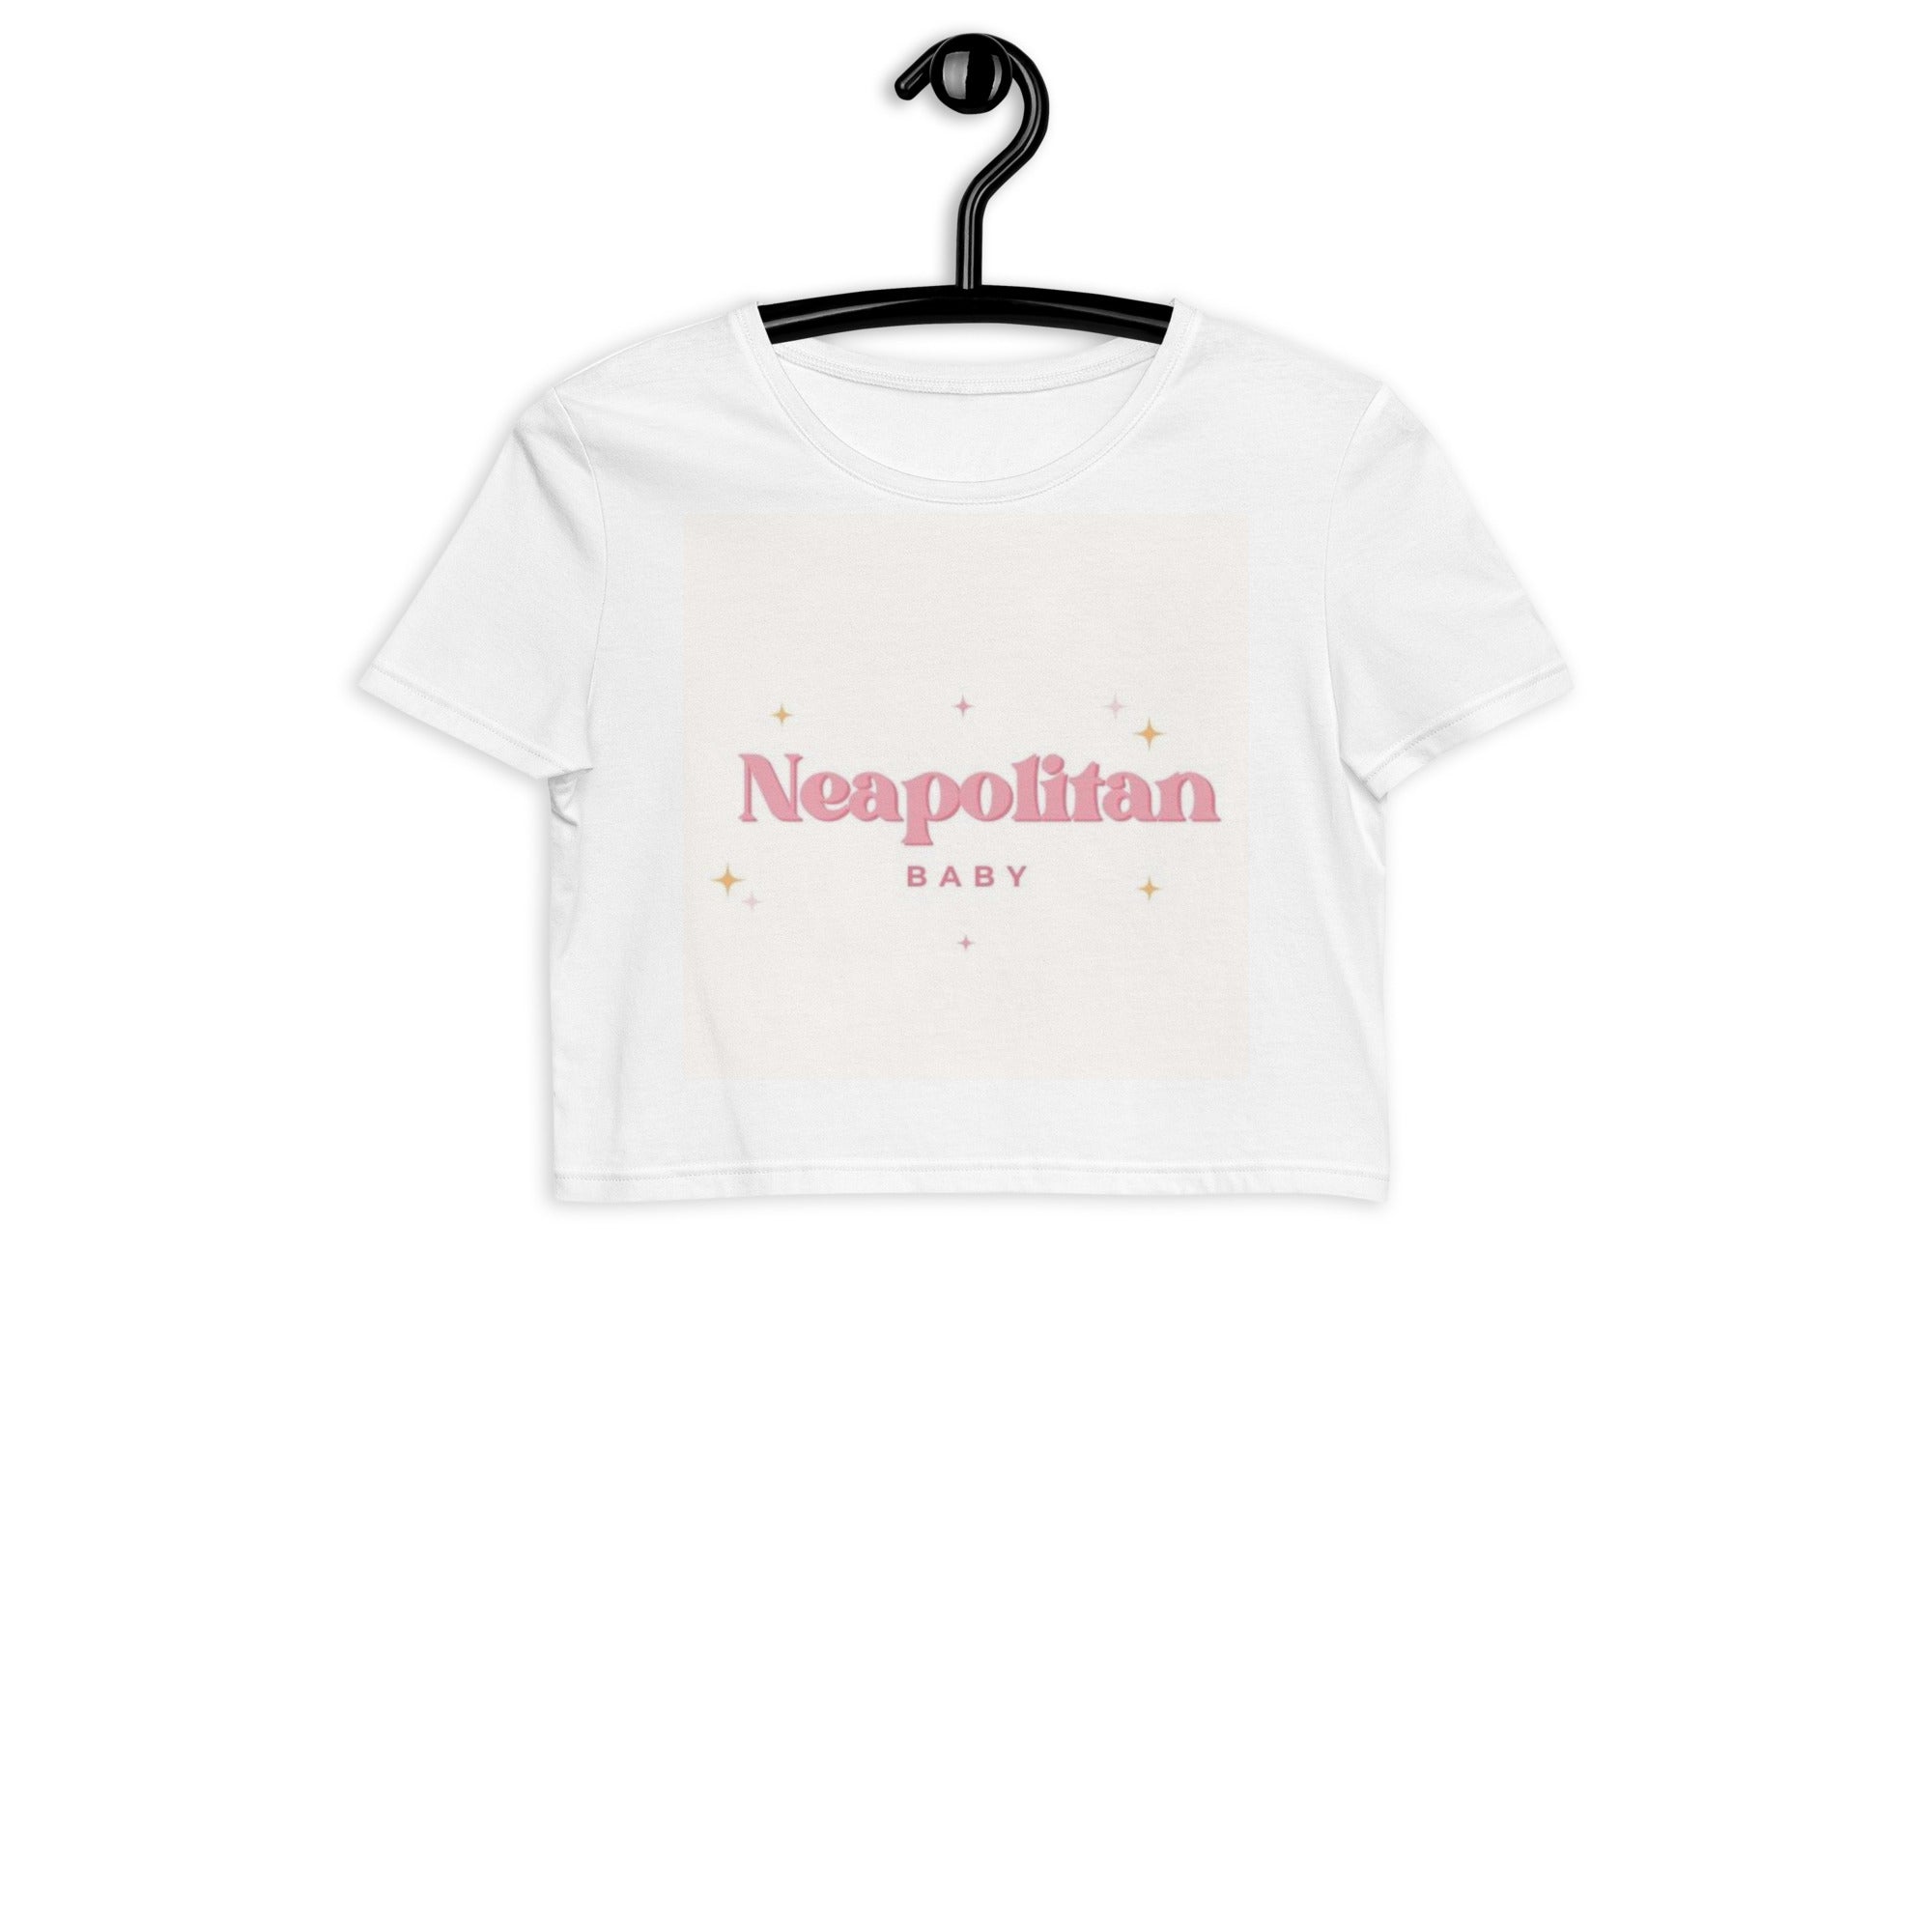 "Neapolitan Baby" Organic Crop Top